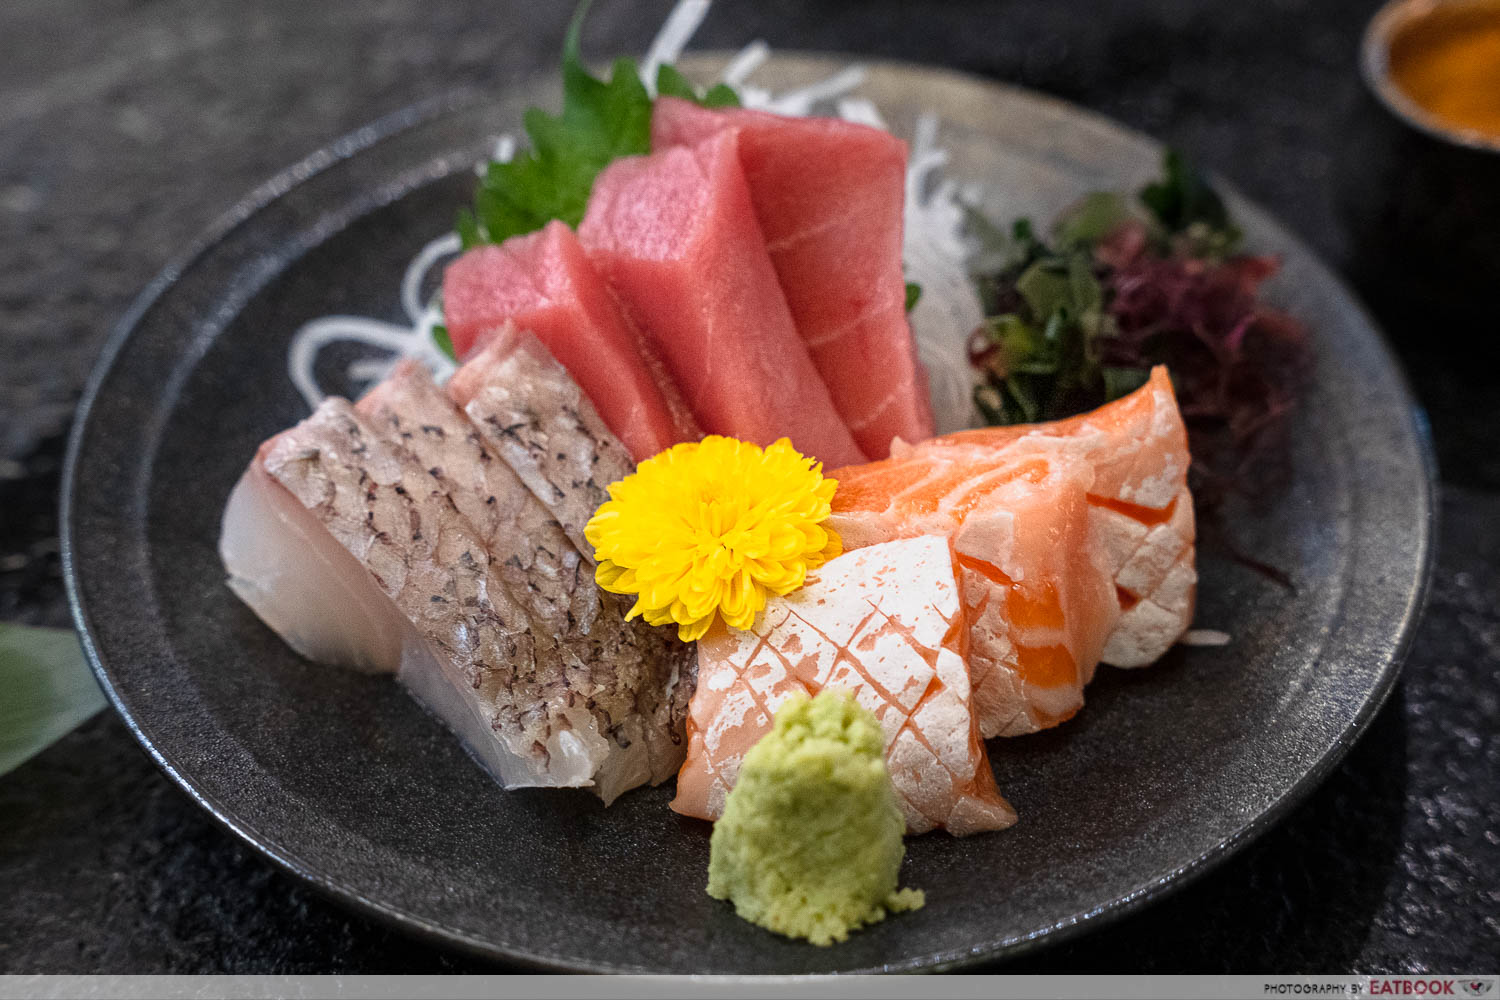 sen-ryo suntec - sashimi platter